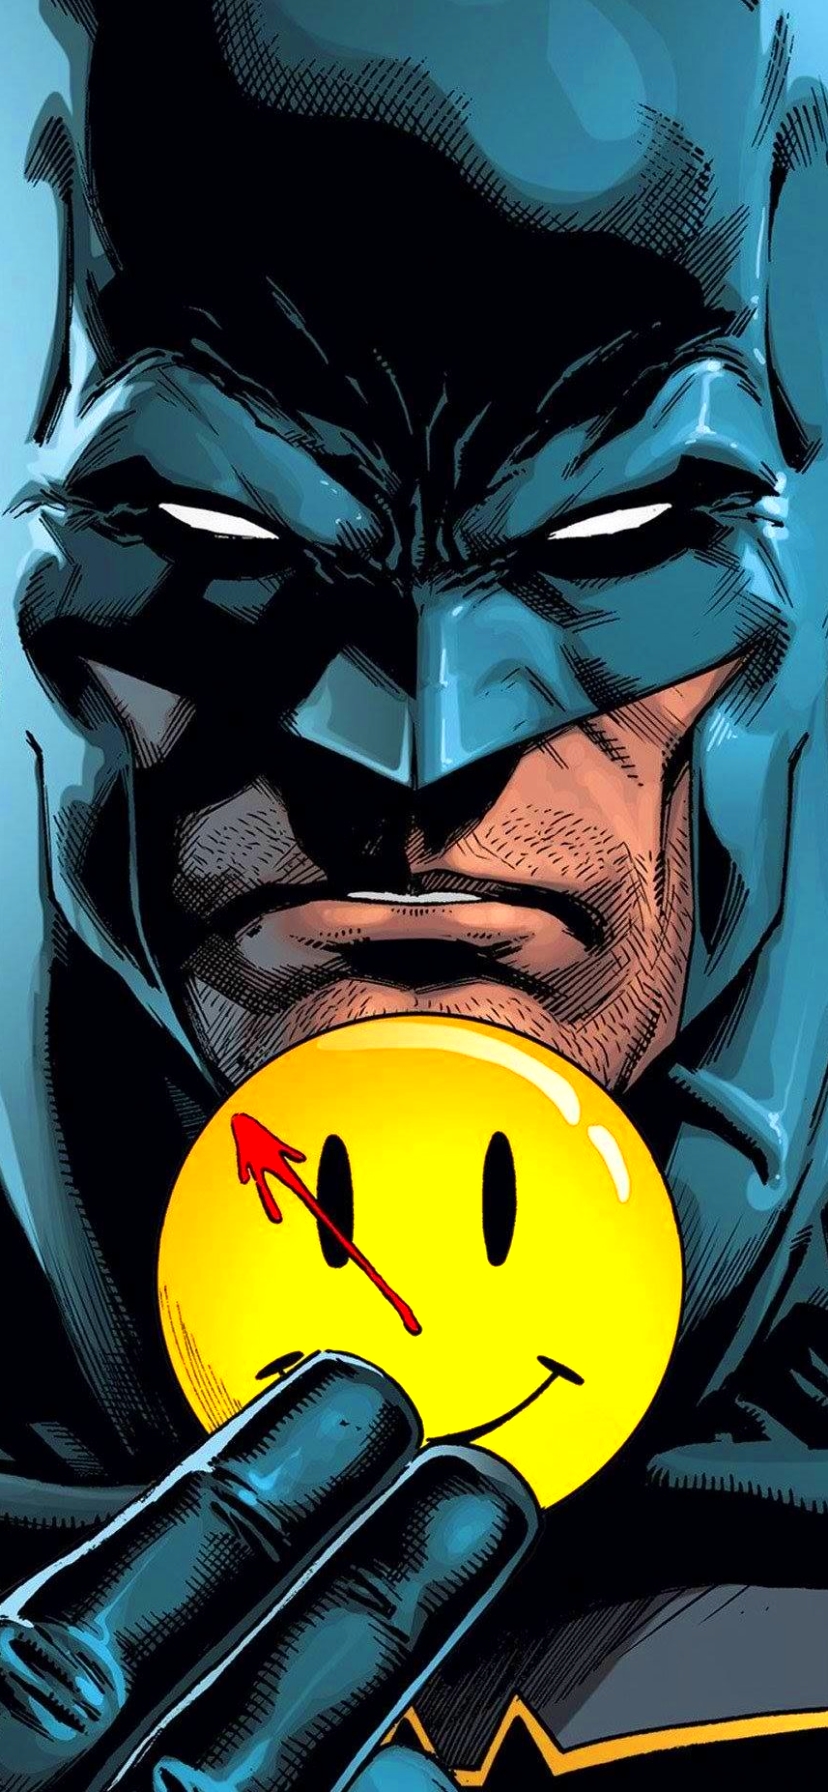 Descarga gratuita de fondo de pantalla para móvil de Historietas, Hombre Murciélago, Vigilantes, Batman/flash: El Botón.